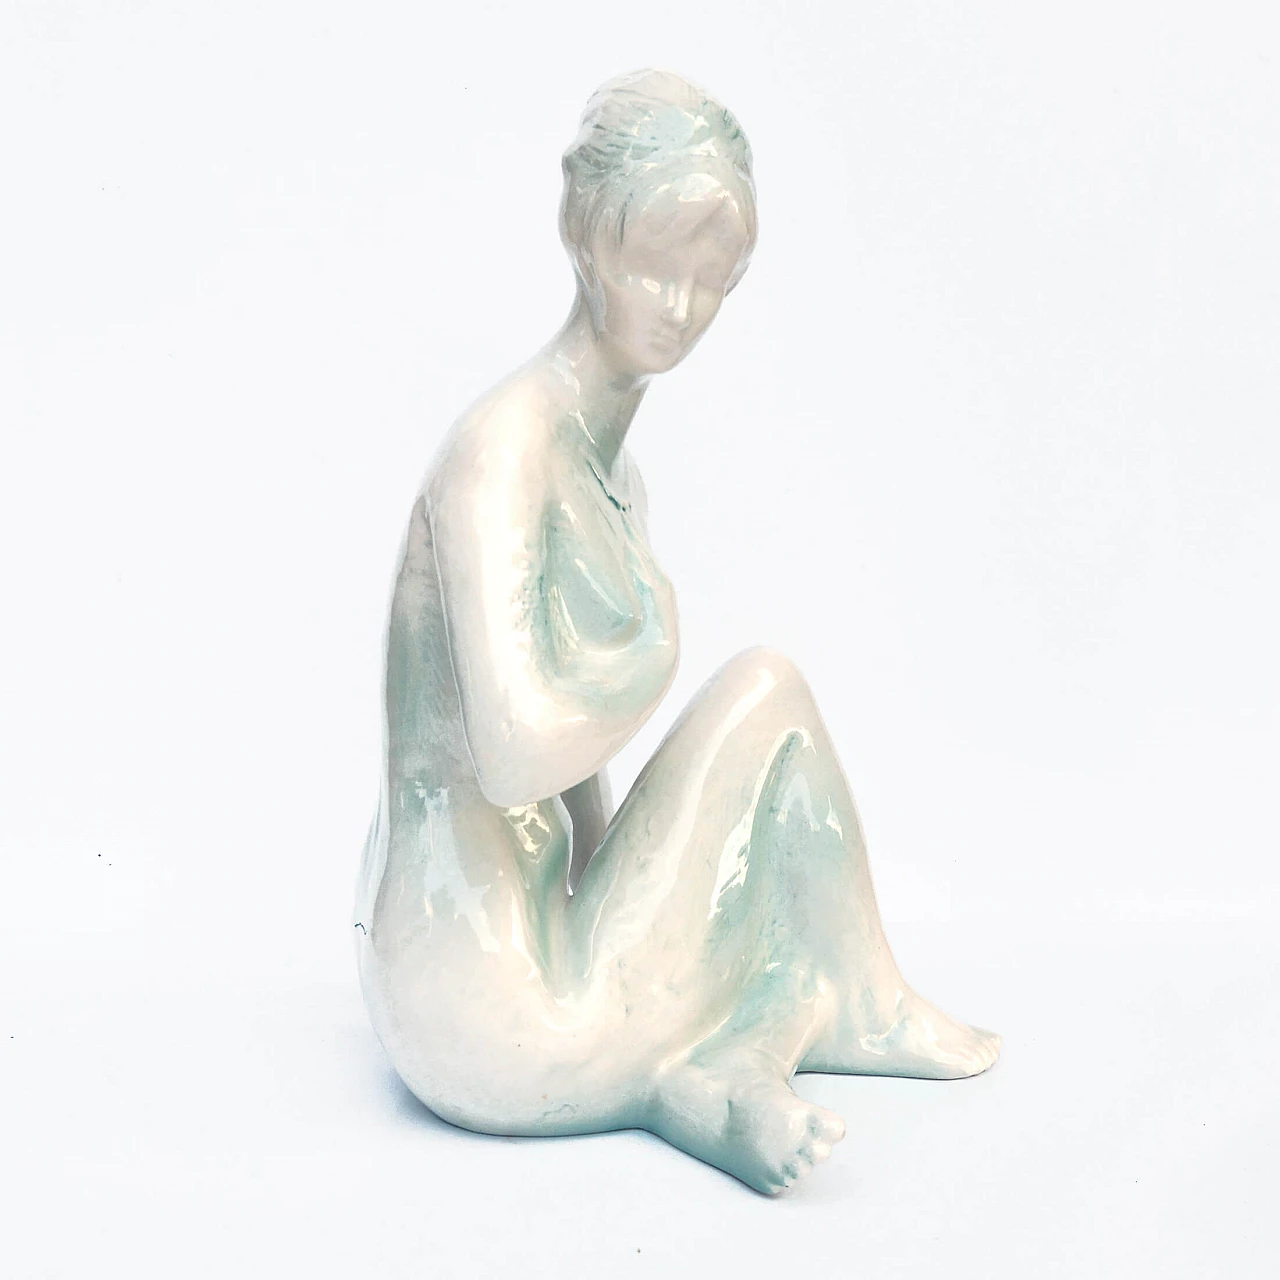 Female nude sculpture by Kokrda Jihokera Bechyně, 1960s 12